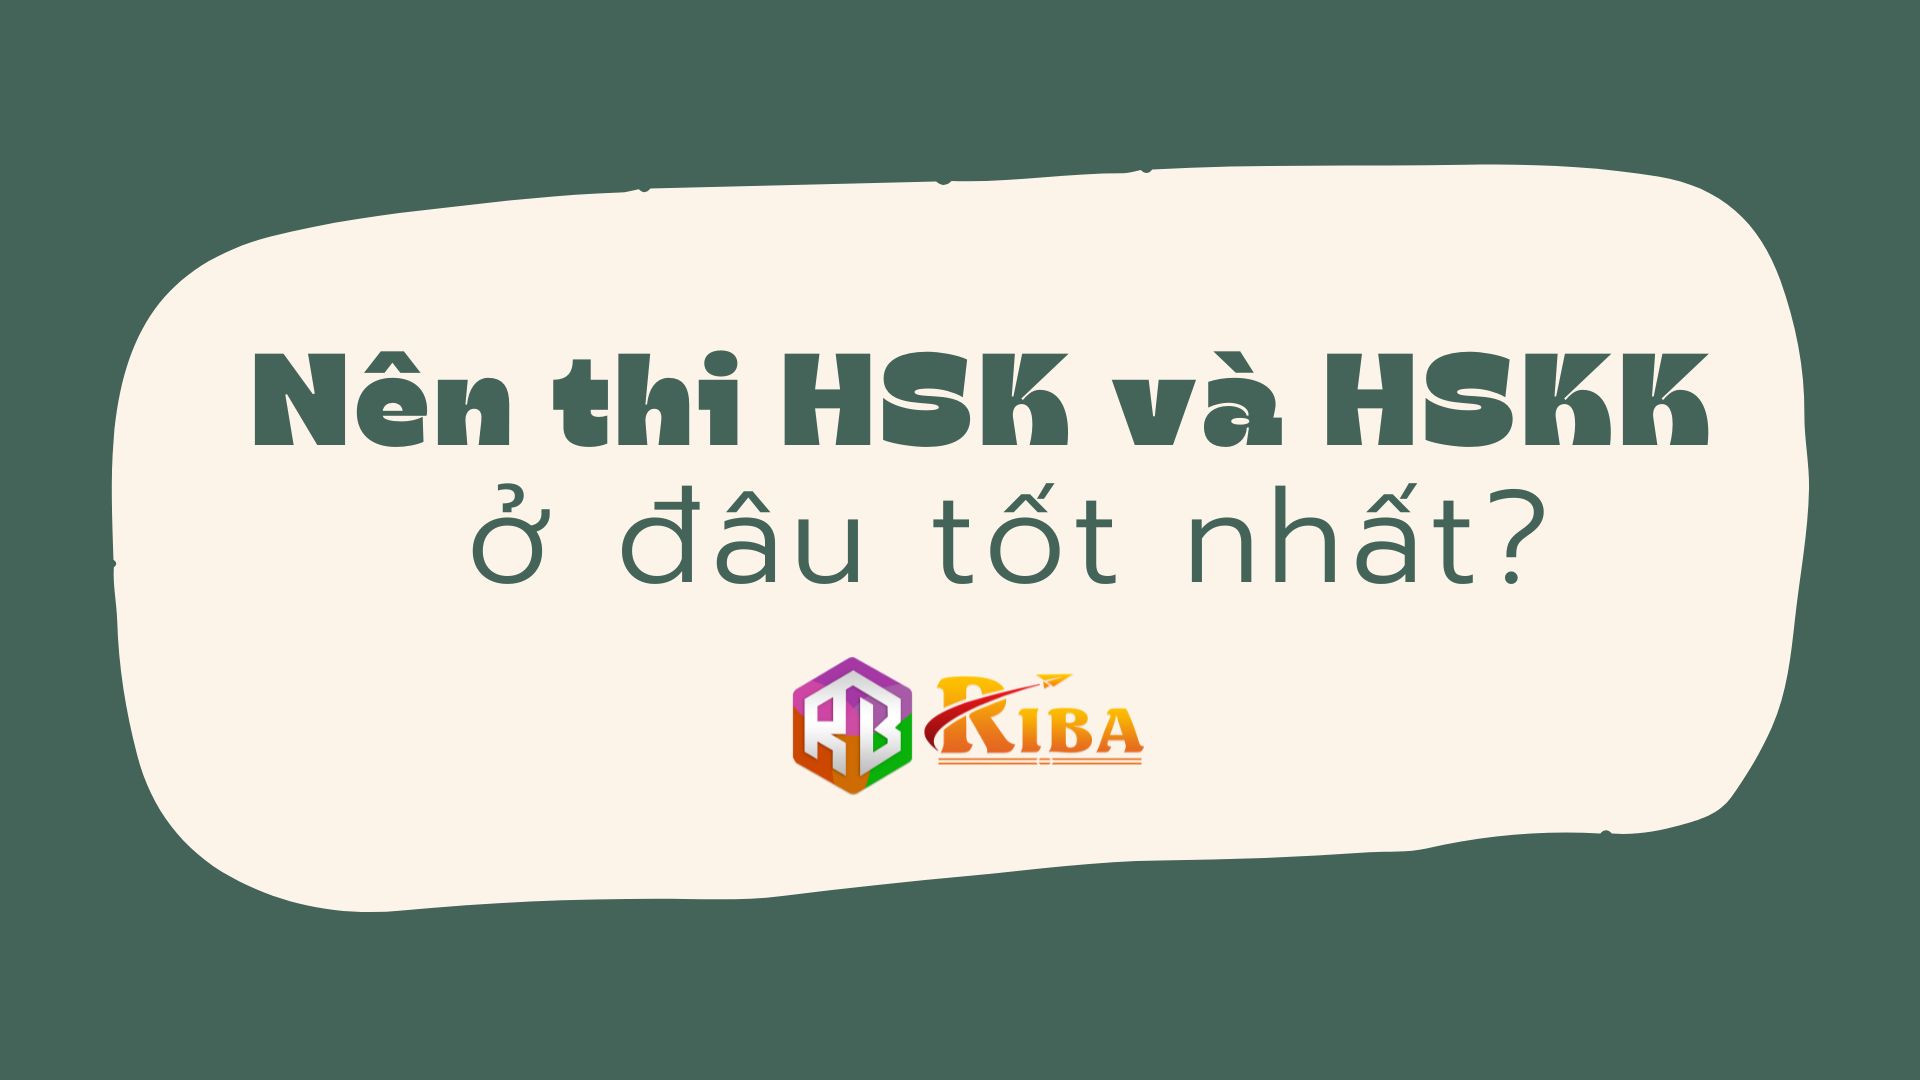 Nên thi HSK và HSKK ở đâu tốt nhất?